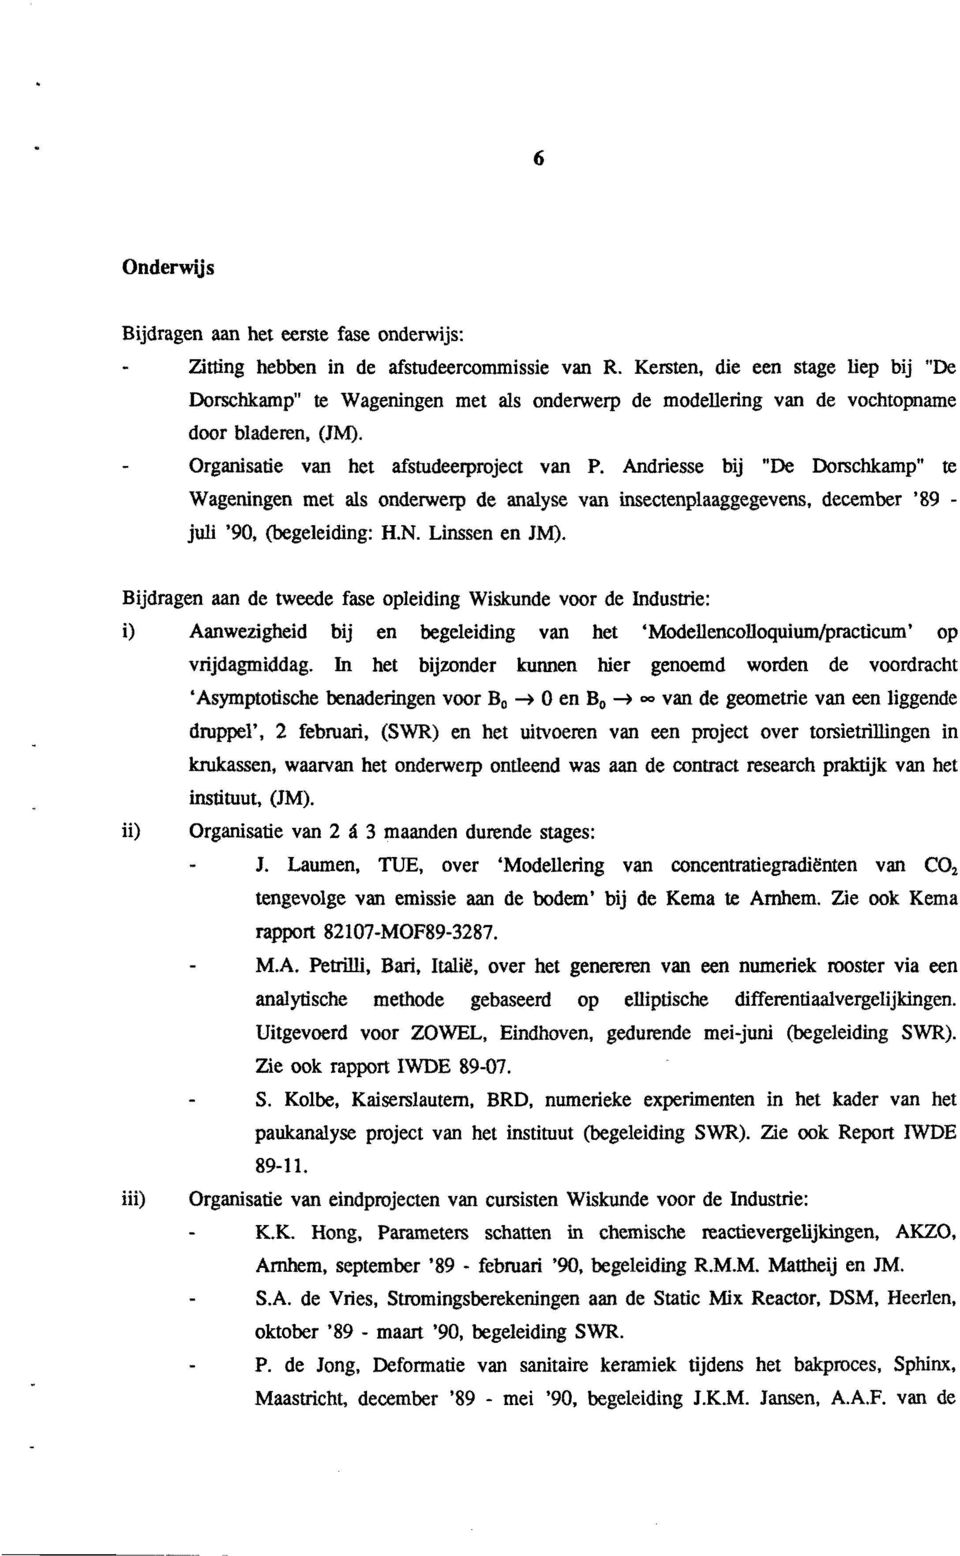 Andriesse bij "De Dorschkamp" te Wageningen met als onderwerp de analyse van insectenplaaggegevens, december '89 - juli '90, (begeleiding: H.N. Linssen en JM).